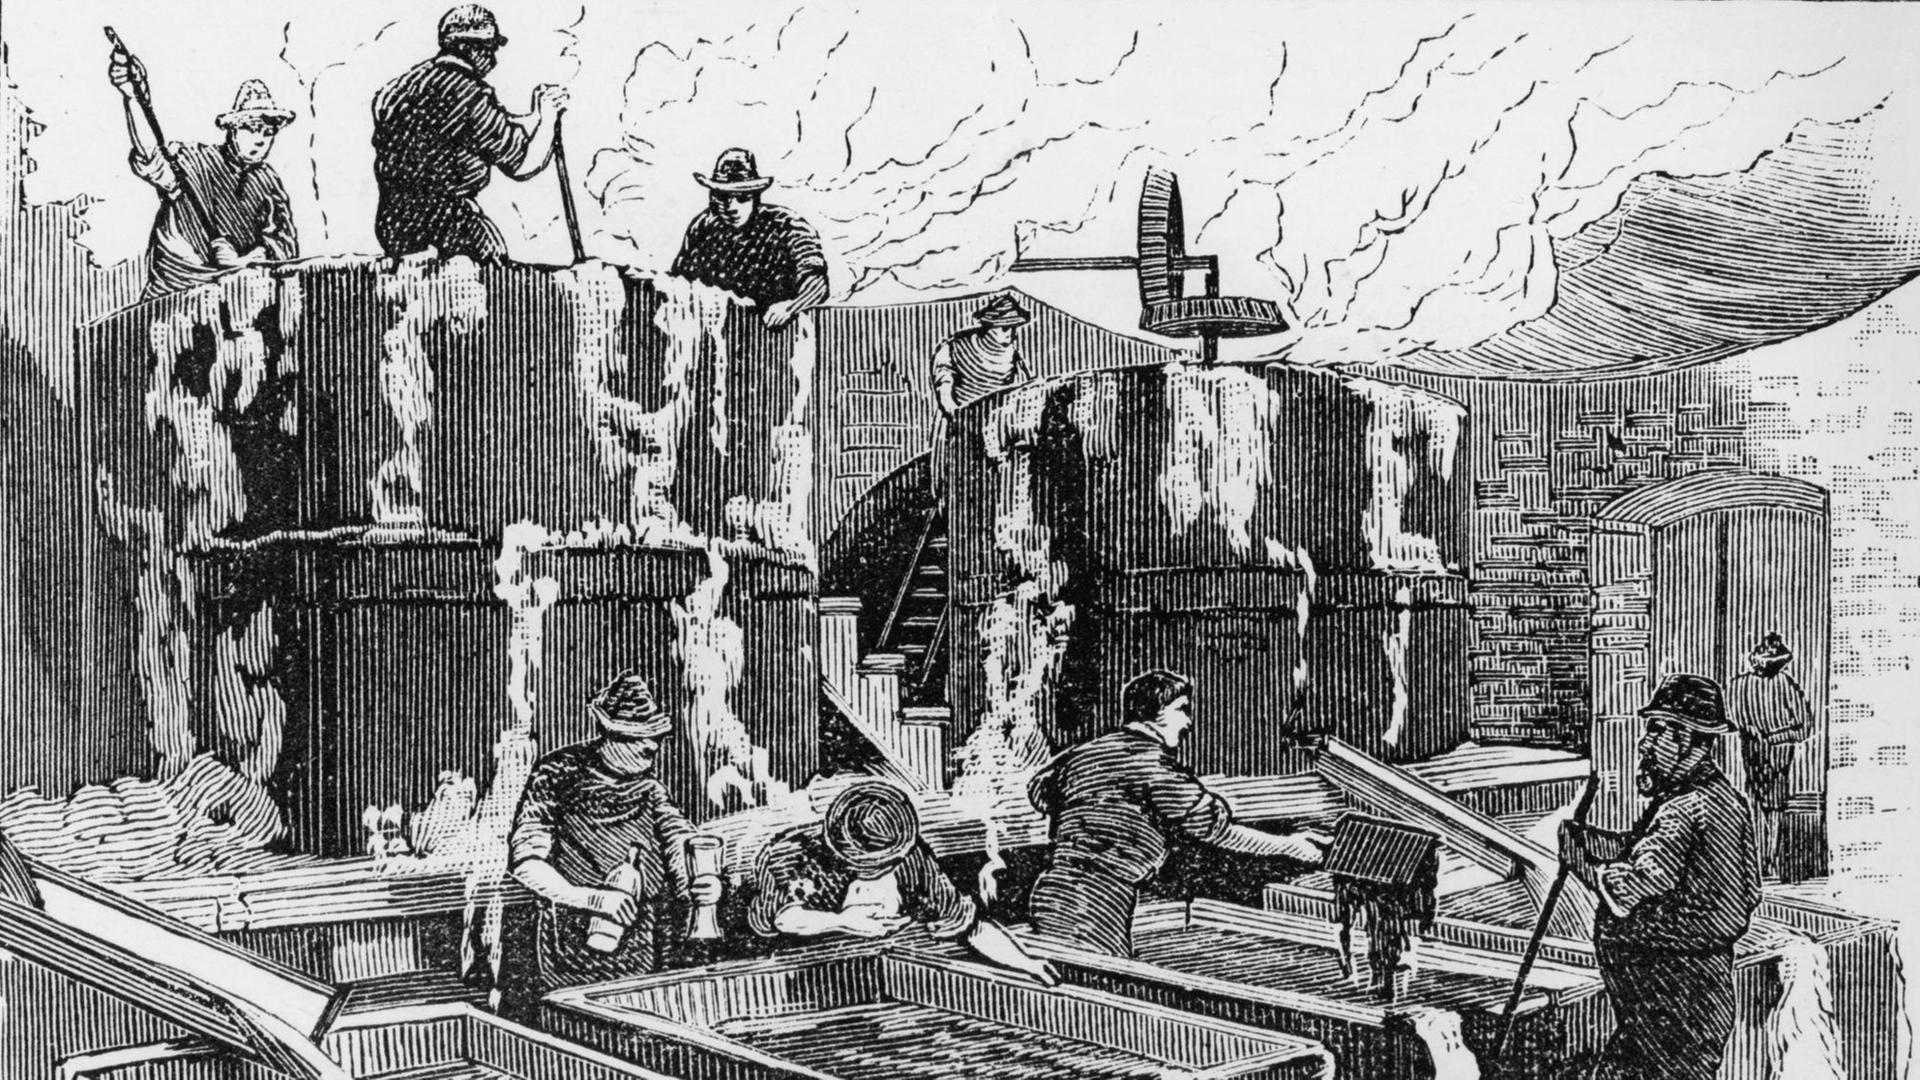 Fabrikation von Kunstbutter in Amerika (Holzstich): Oleomargarin, hergestellt aus Rindertalg und Schweinefett nach dem 1869 patentierten Verfahren des französischen Chemikers Hippolyte Mege-Mouries.